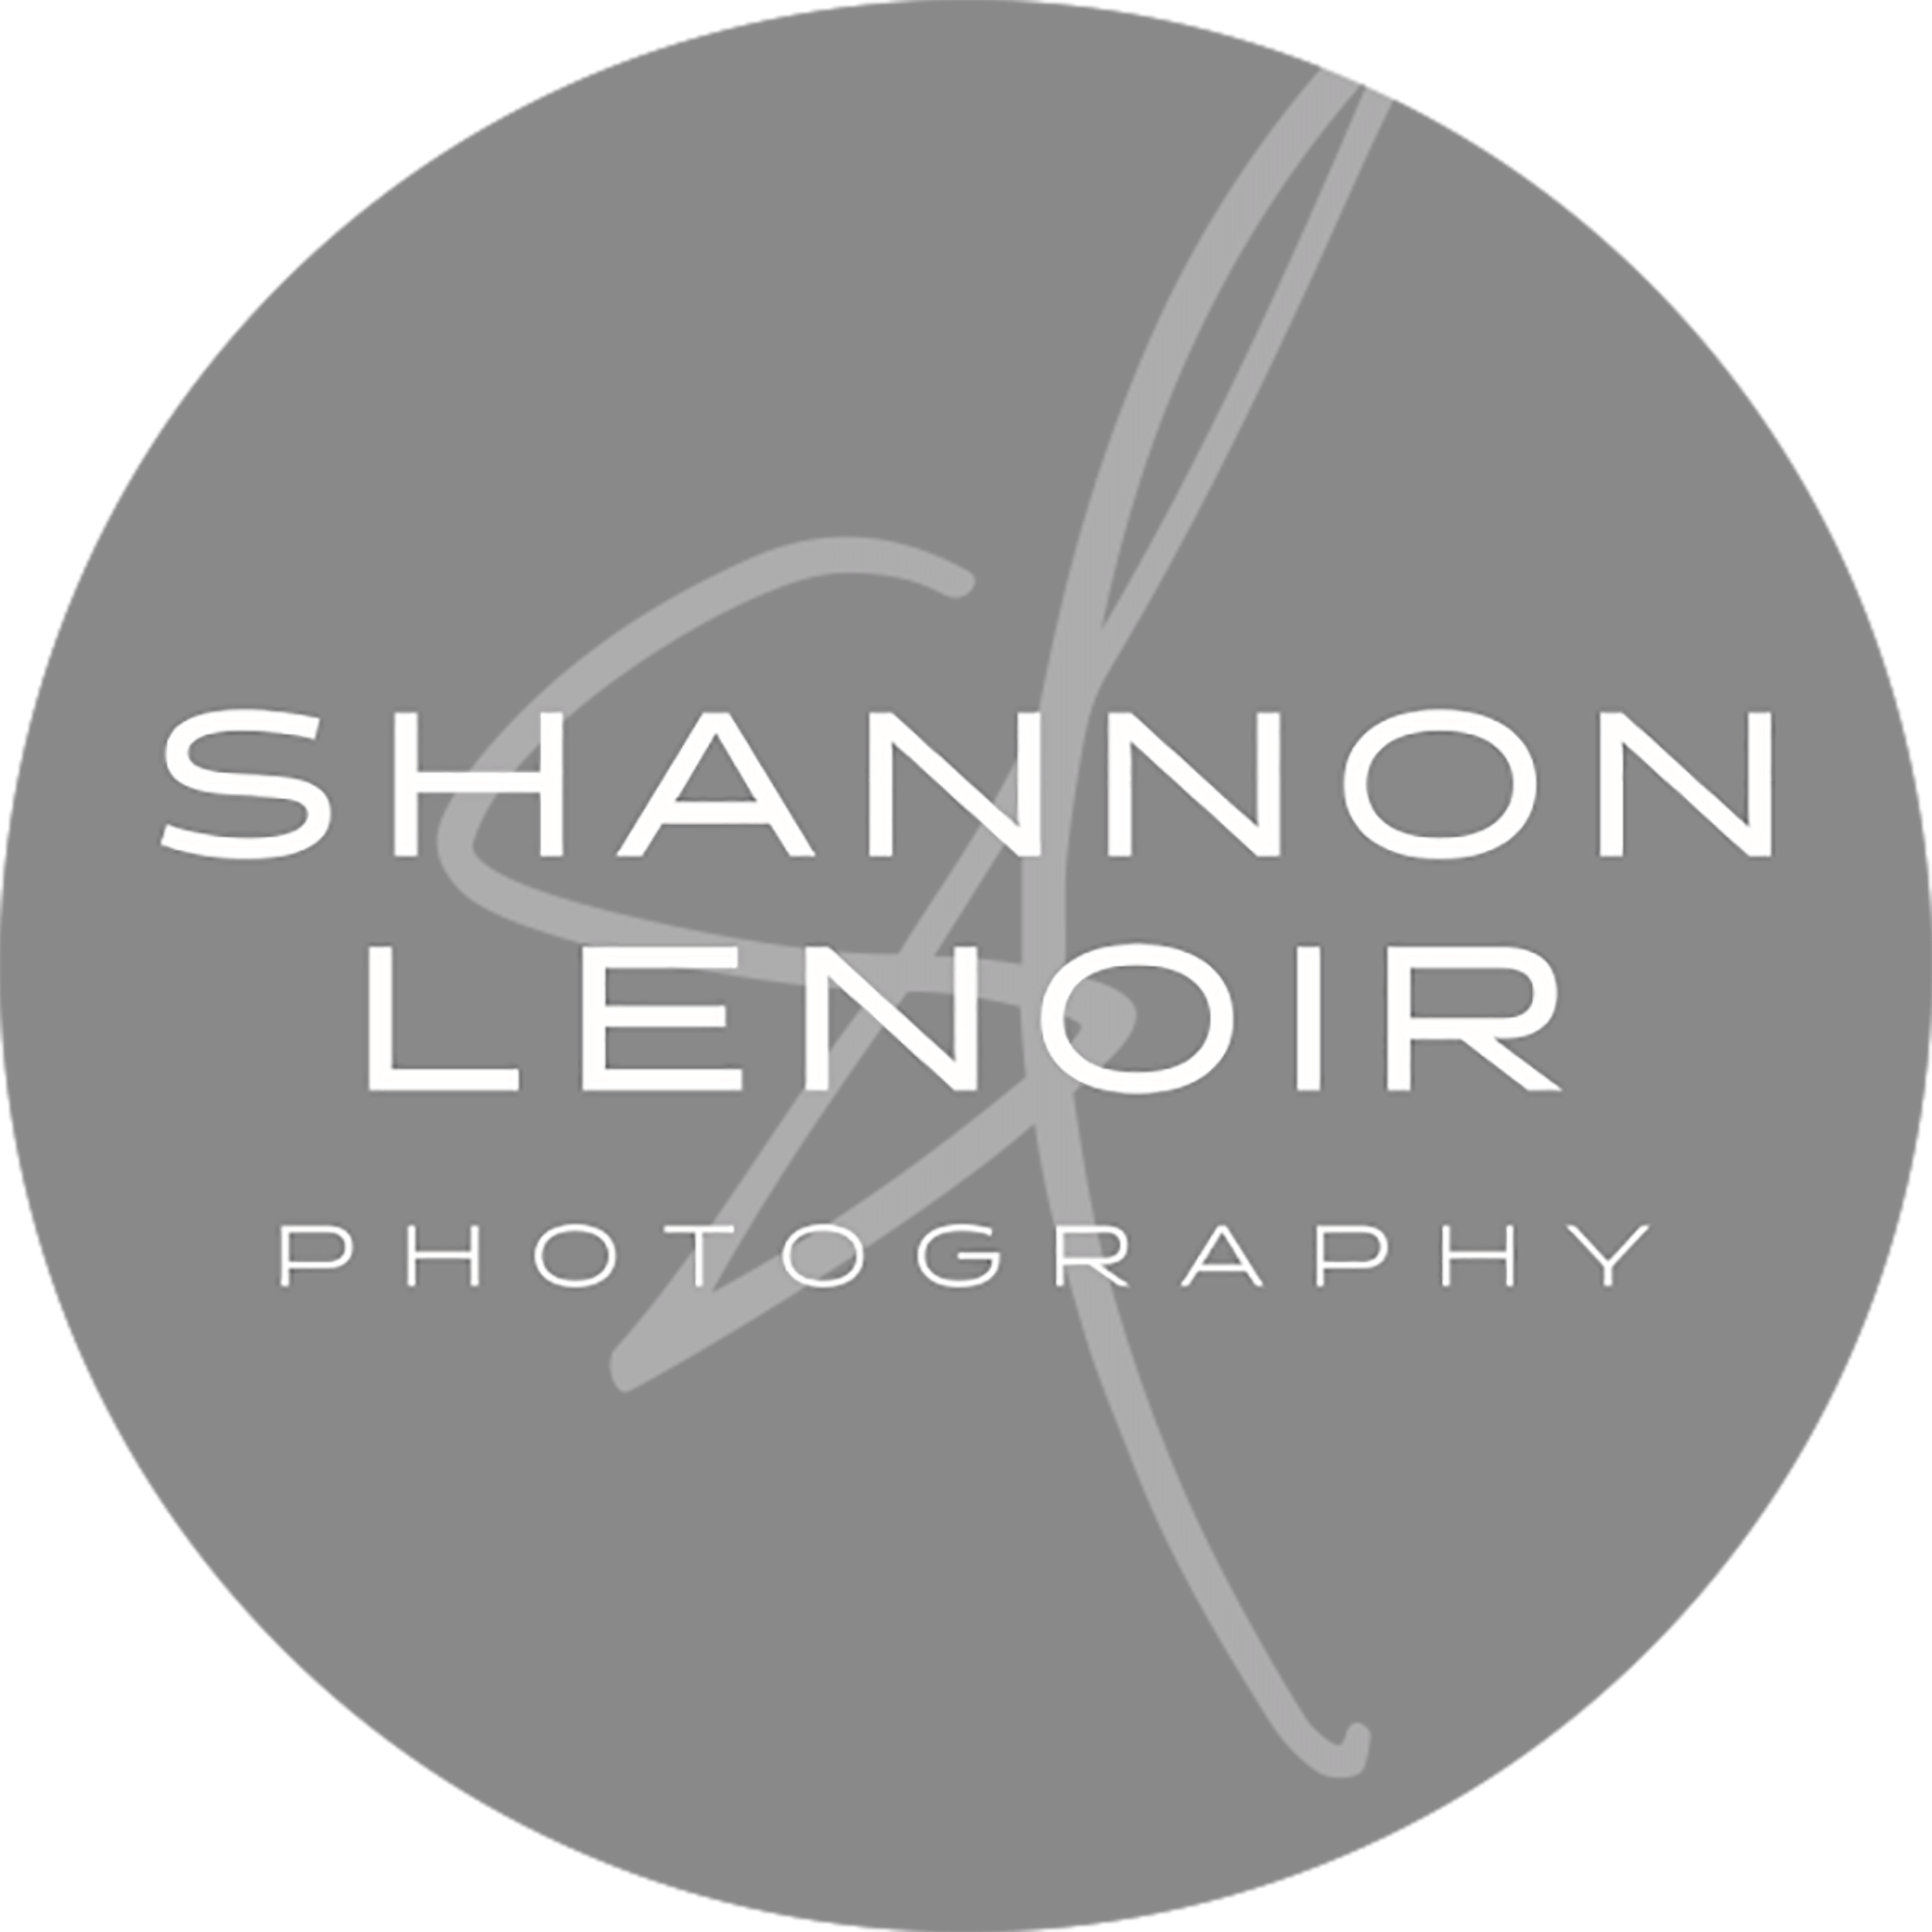 Shannon Lenoir Photography